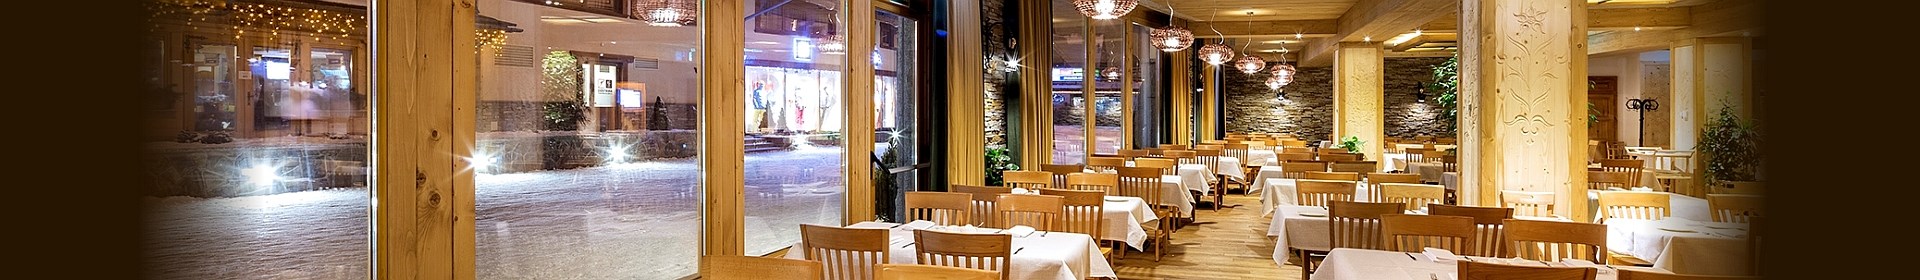 WYŻYWIENIE RESTAURACJA HOTELOWA Największą z restauracji w kompleksie jest restauracja hotelowa.